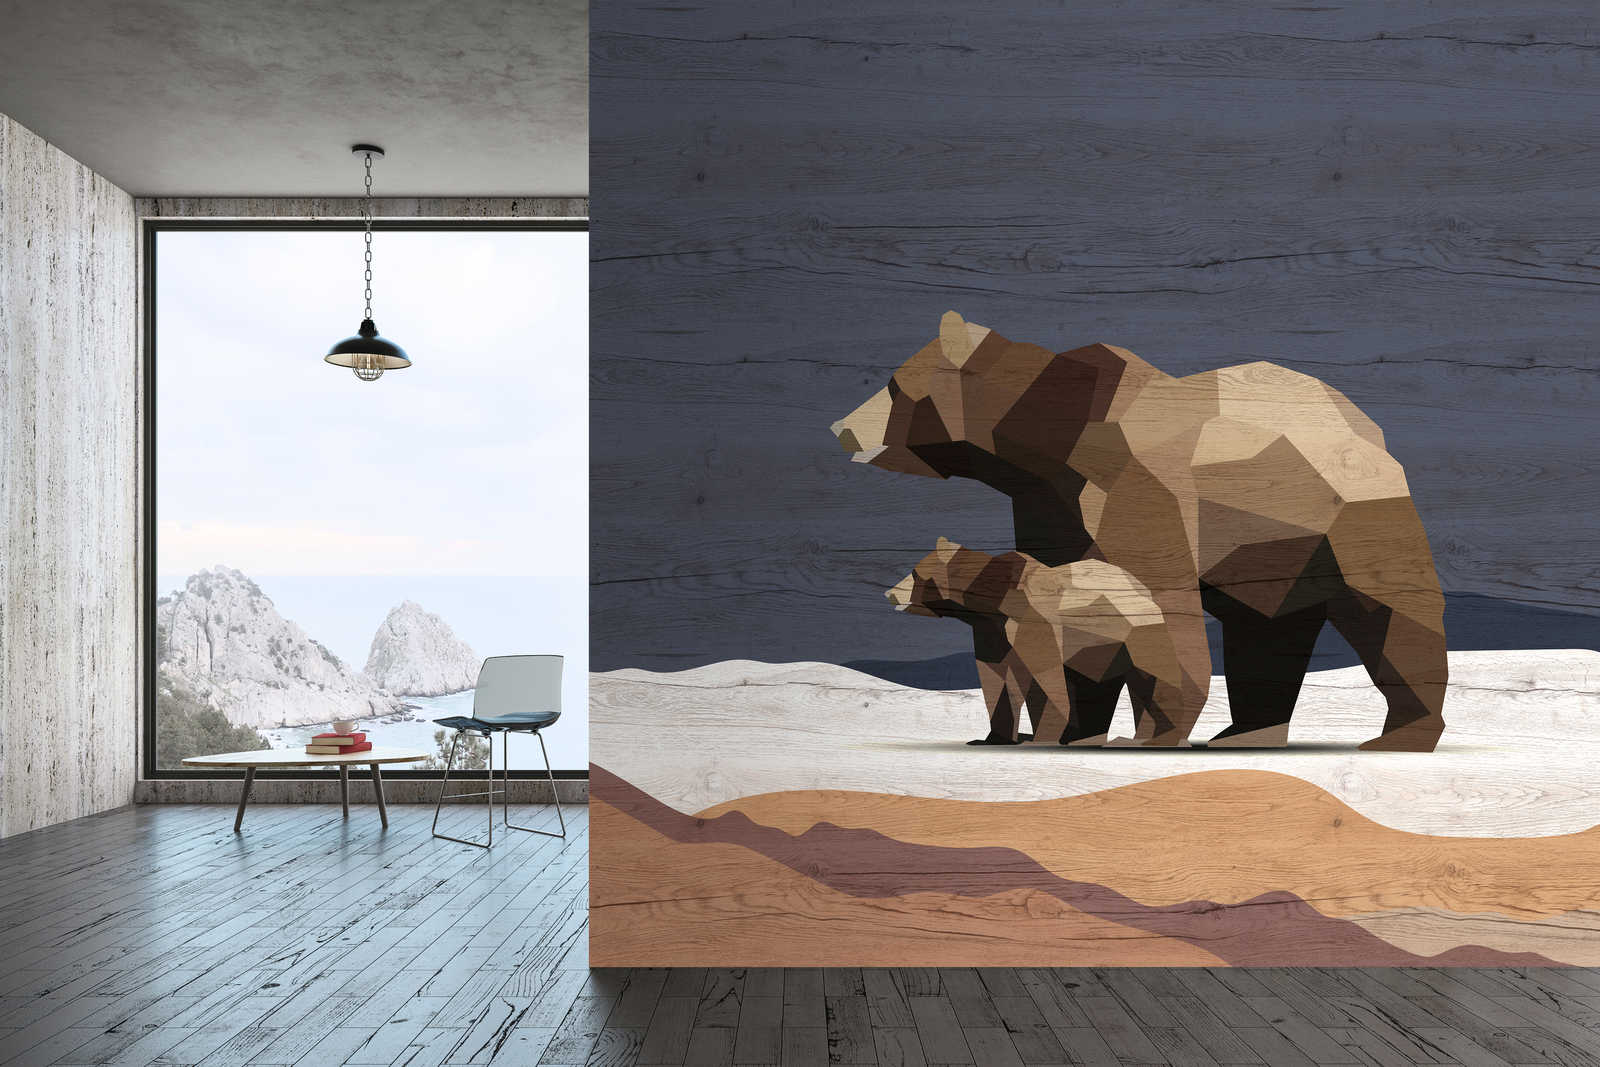             Yukon 3 - Papier peint Famille Ours à facettes & aspect bois
        